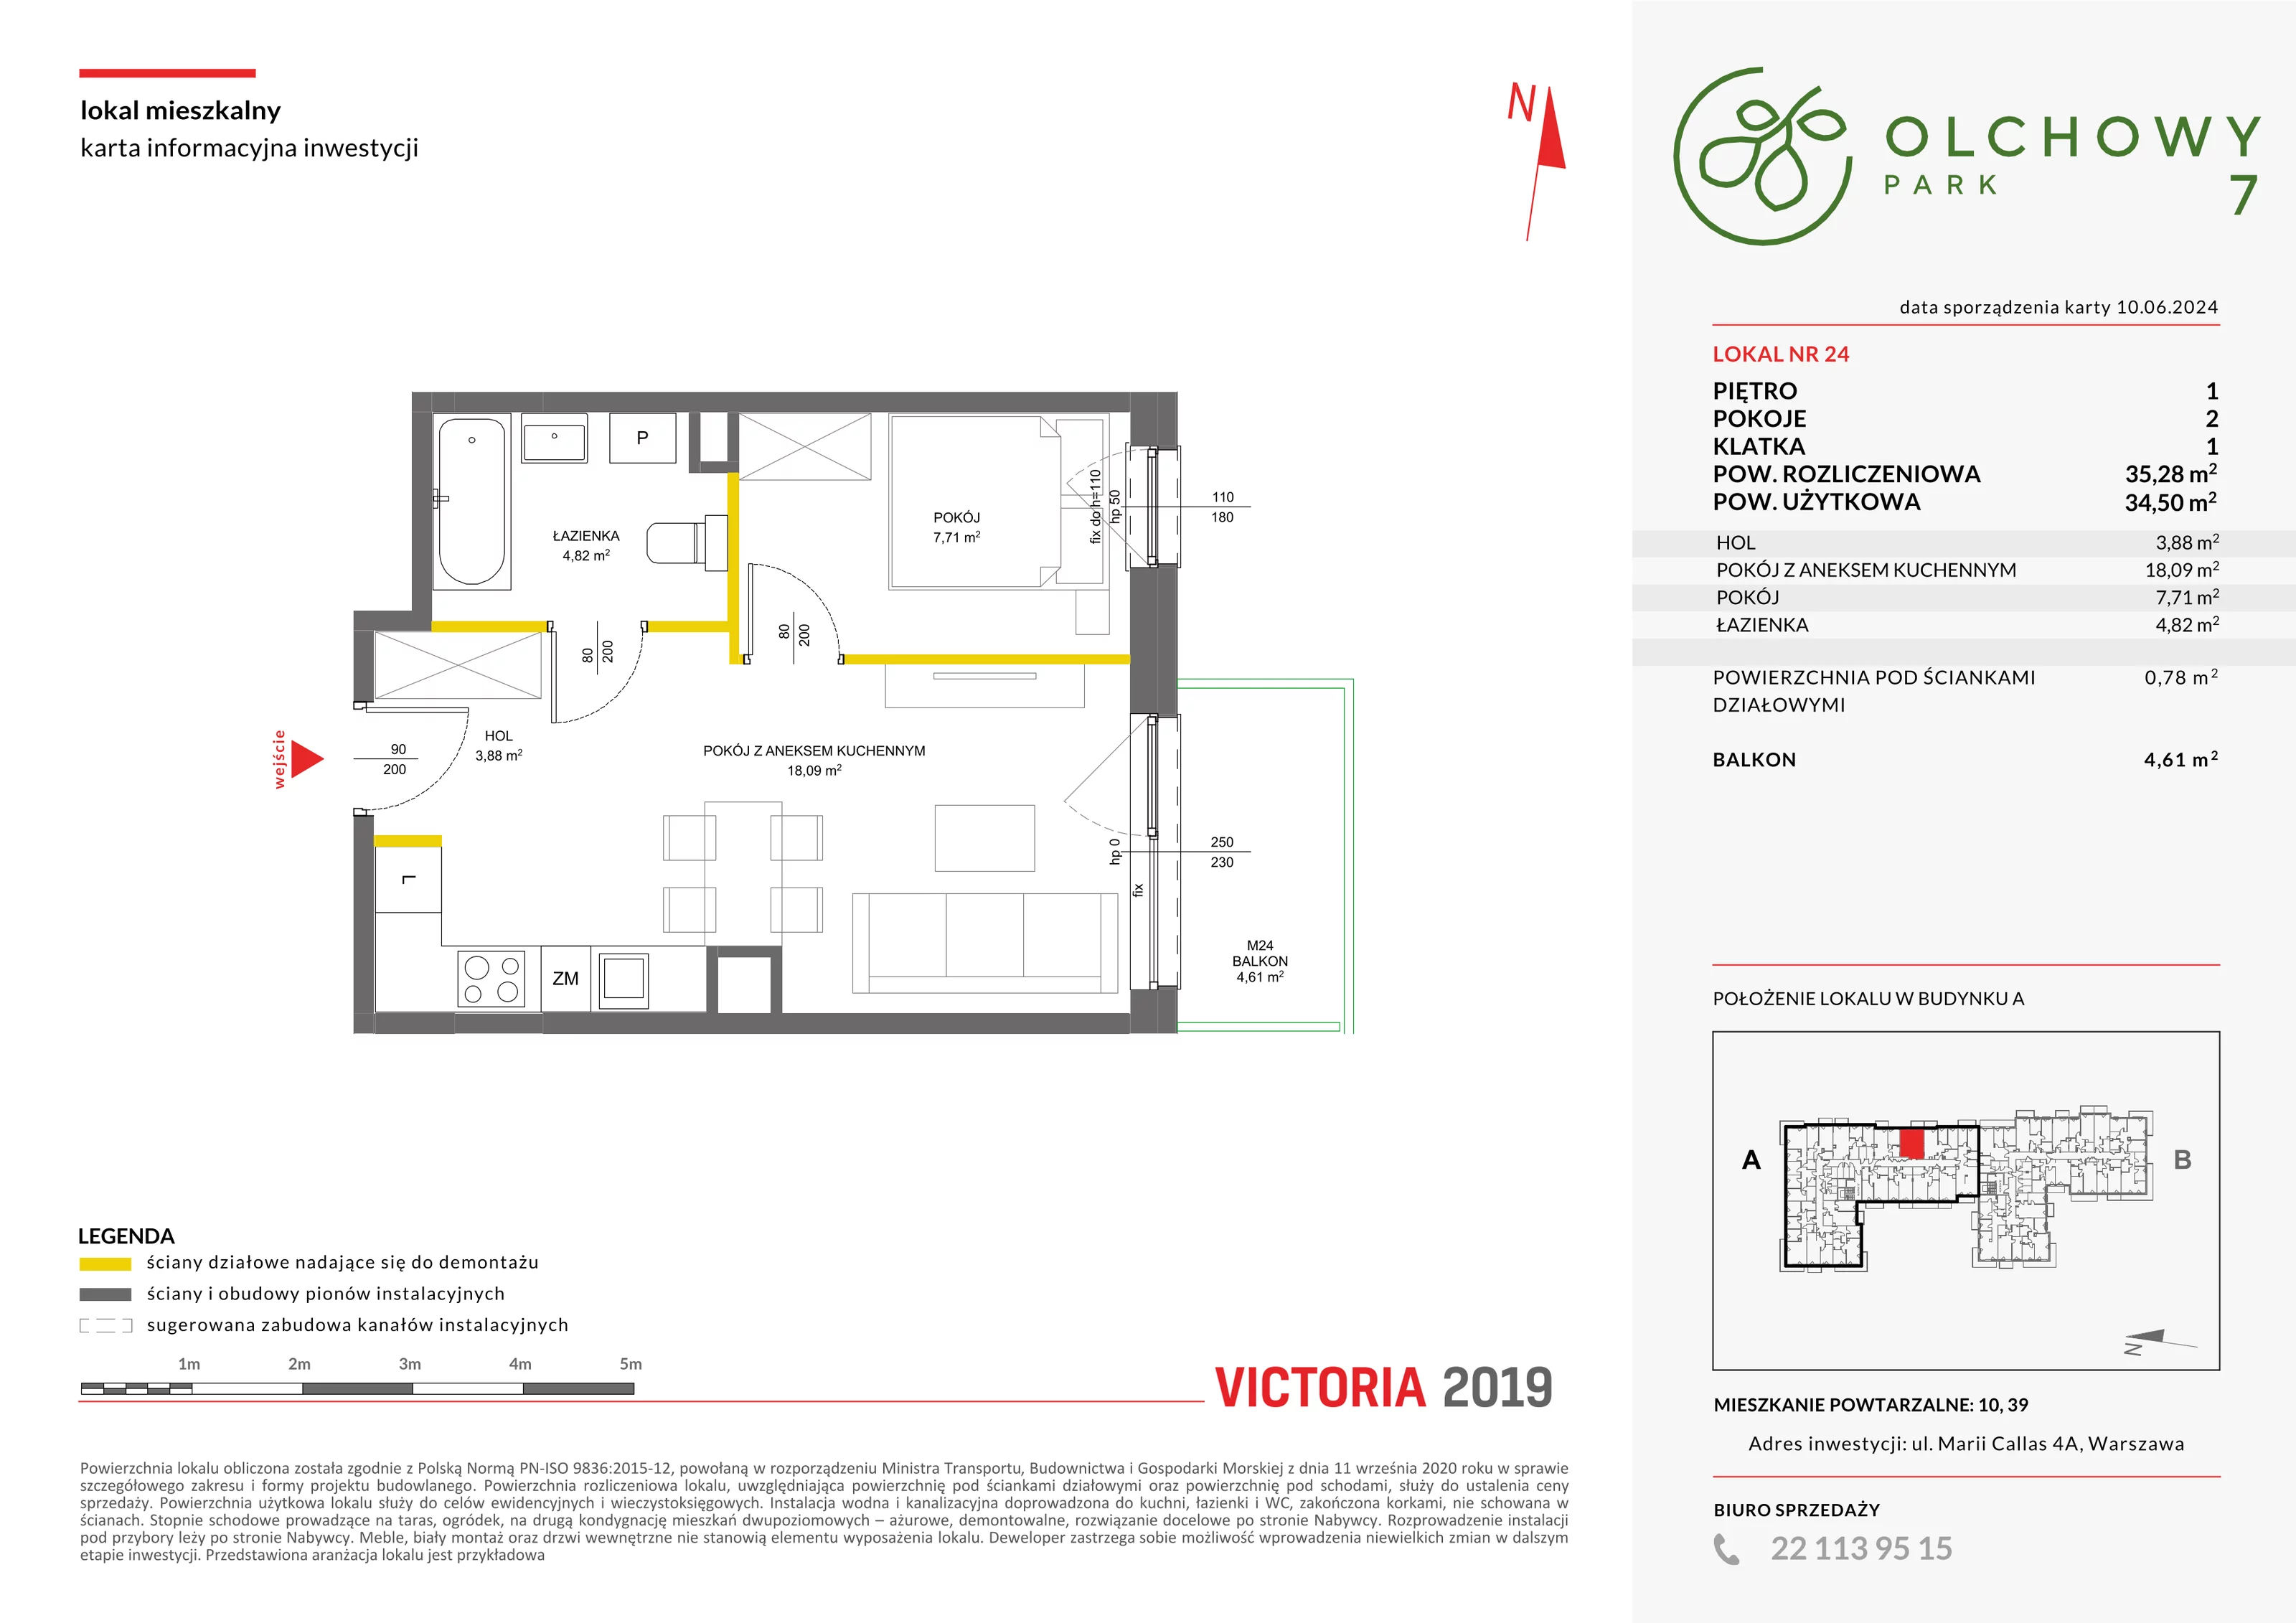 Mieszkanie 35,28 m², piętro 1, oferta nr VII/24, Olchowy Park 7, Warszawa, Białołęka, Kobiałka, ul. Marii Callas 4A